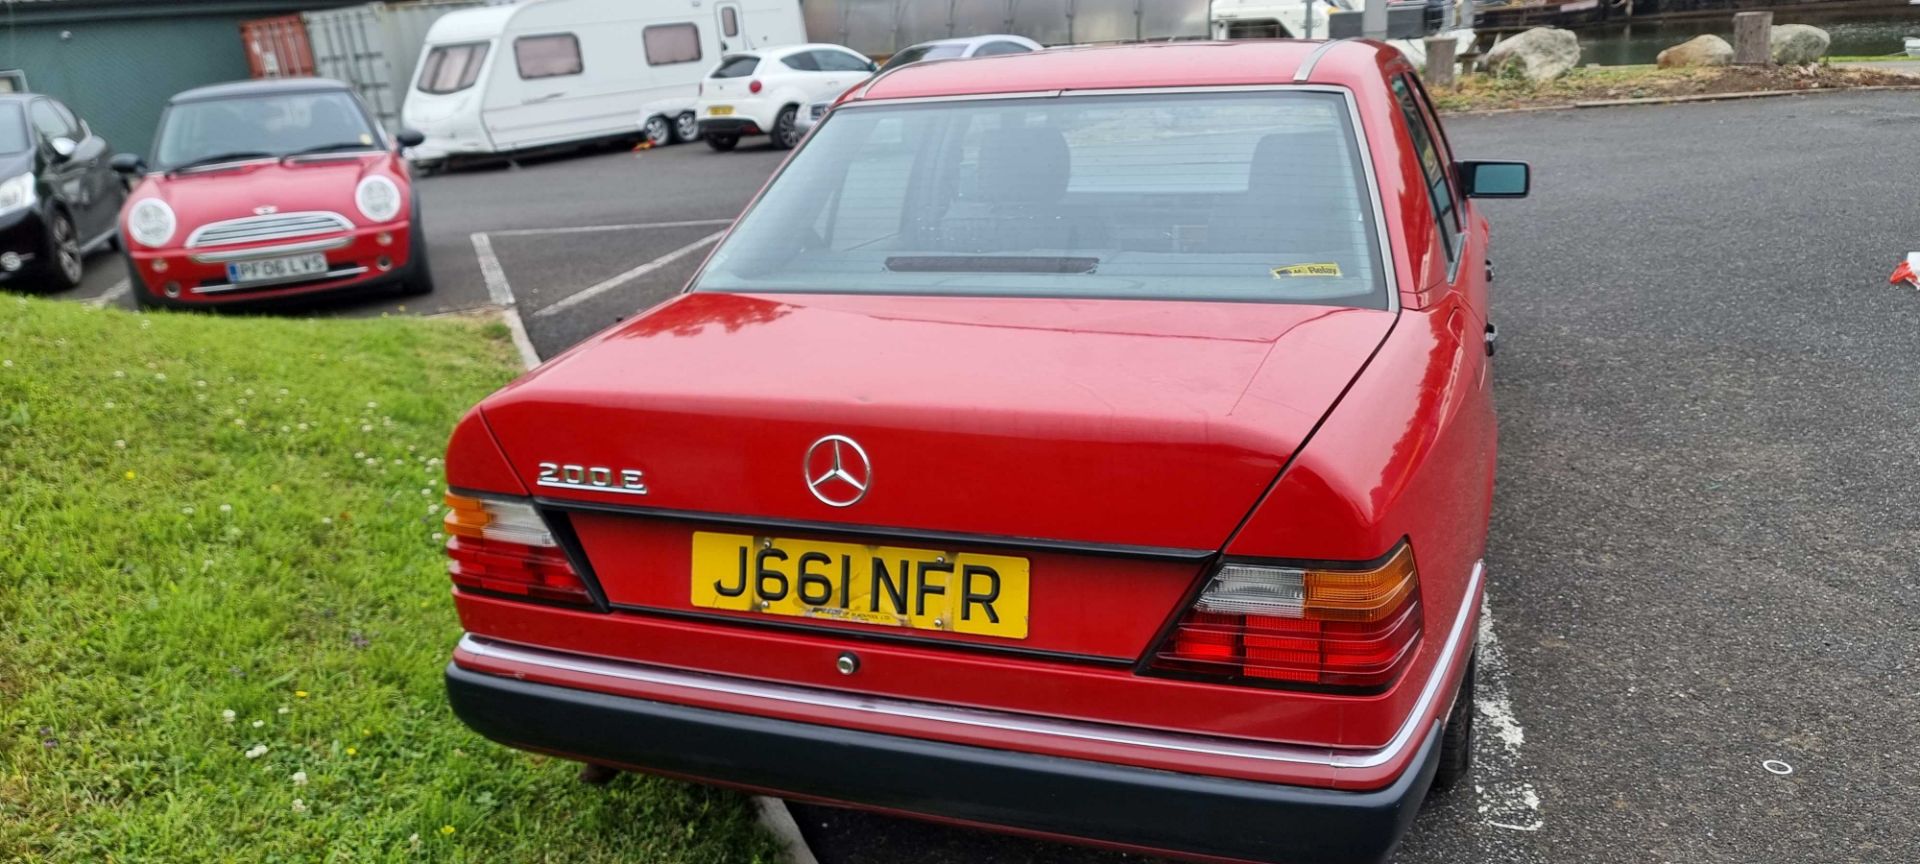 1991 Mercedes Benz W124, 1997cc. Registration number J661 NFR. VIN number WDB124 0212B 738362. - Image 6 of 13